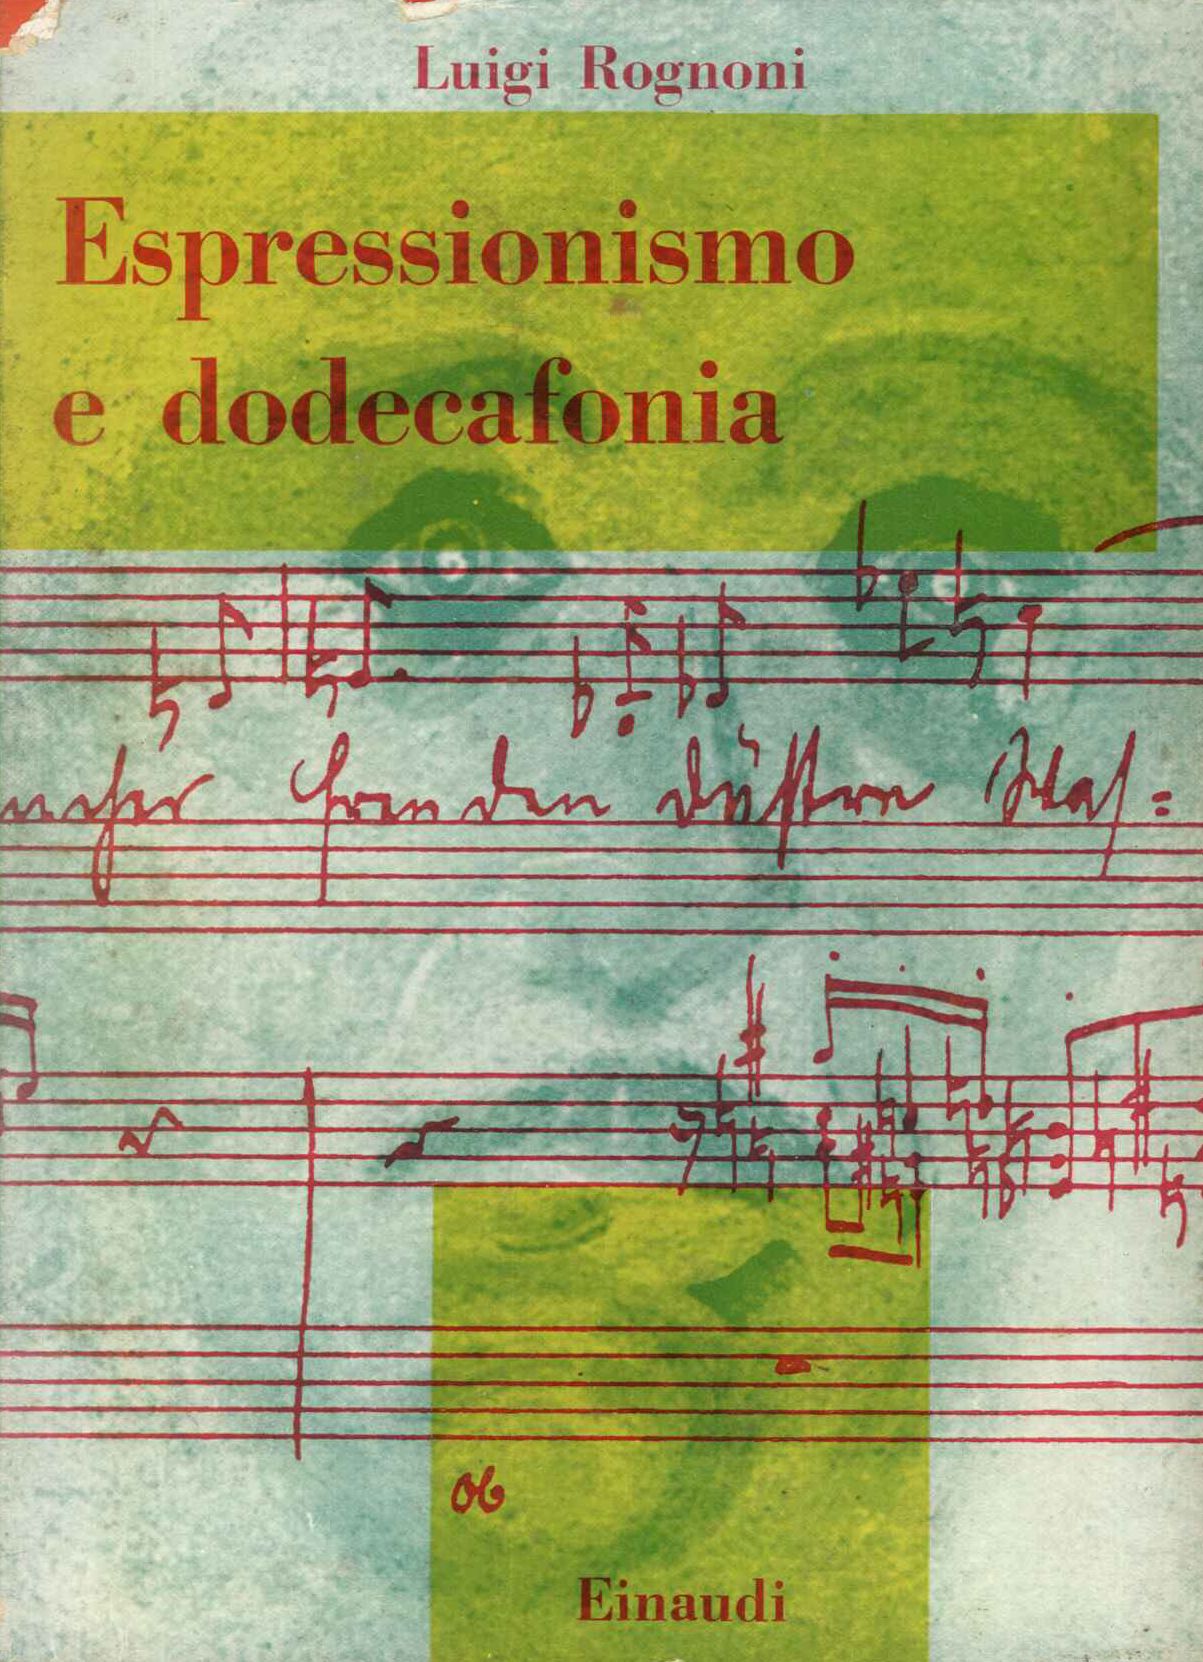 Espressionismo e dodecocafonia